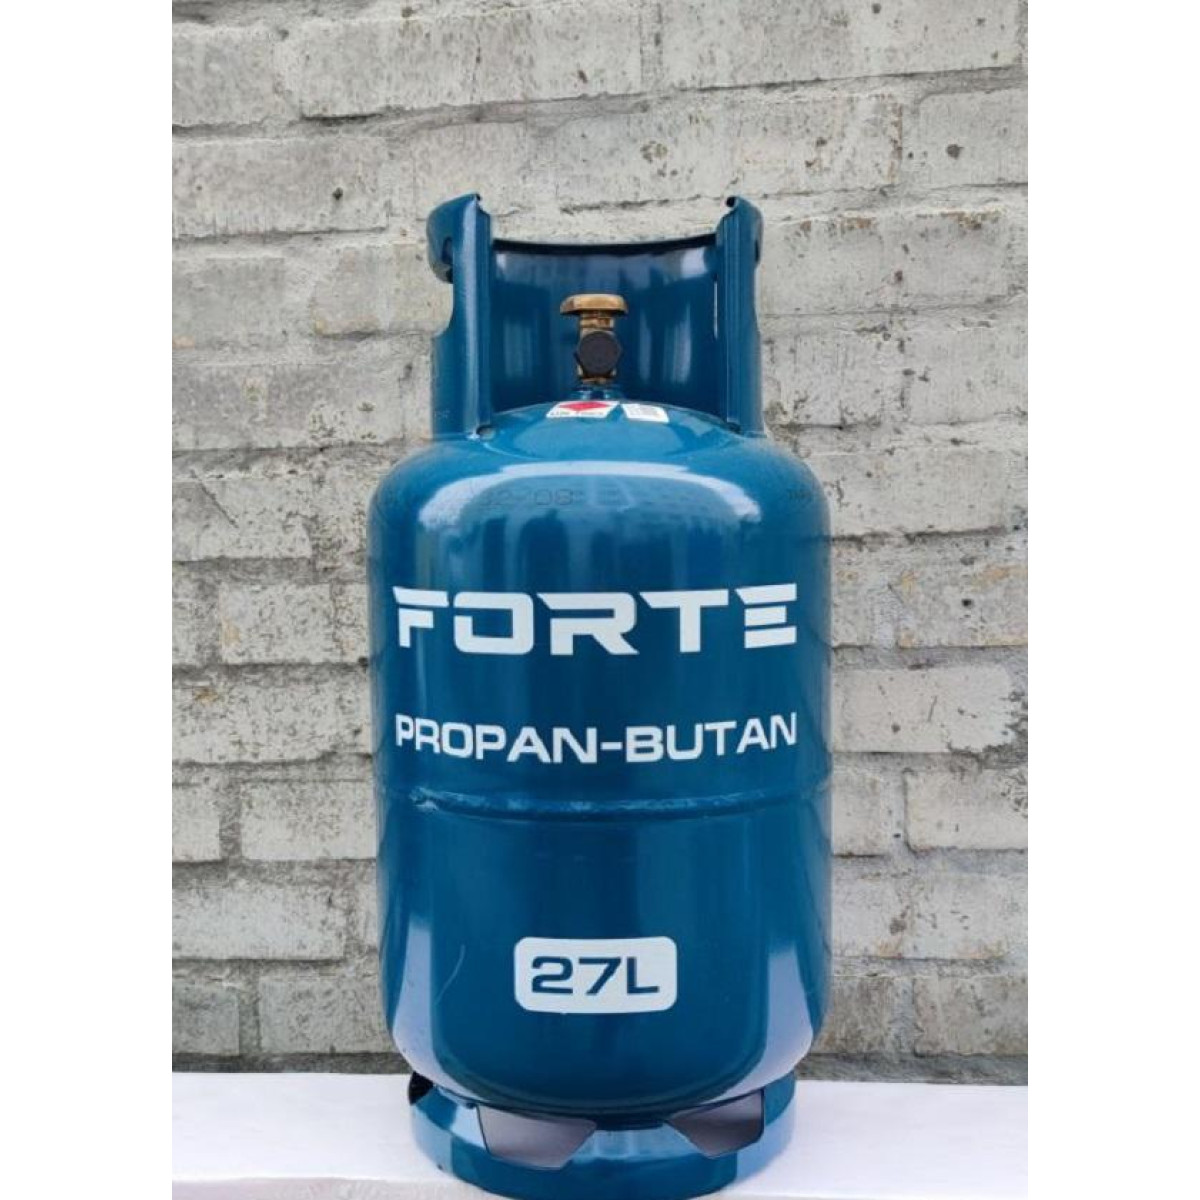 Балон газовый Forte 27 л. пропан-бутан